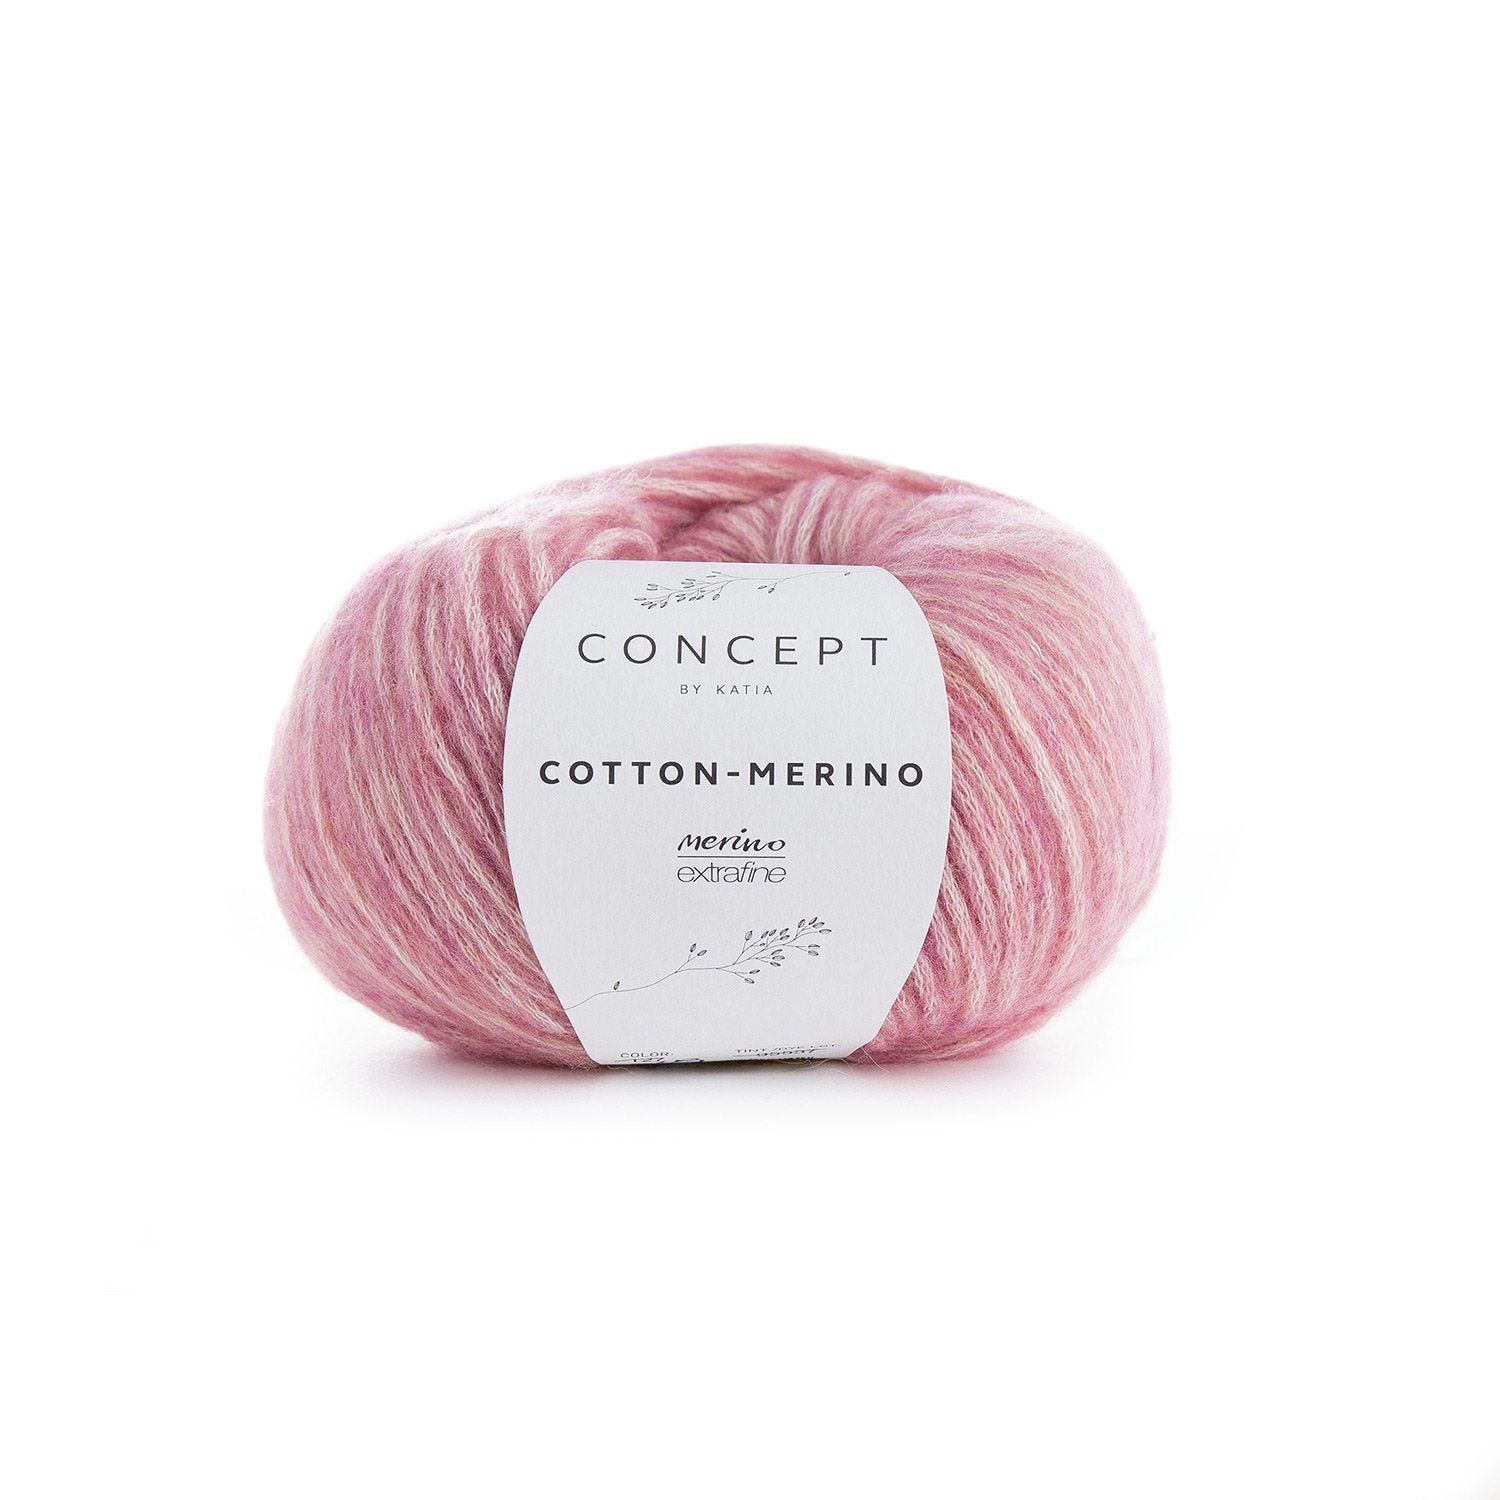 London Beanie Crochet Kit - Justine Walley - 119 Deep Pink - The Little Yarn Store